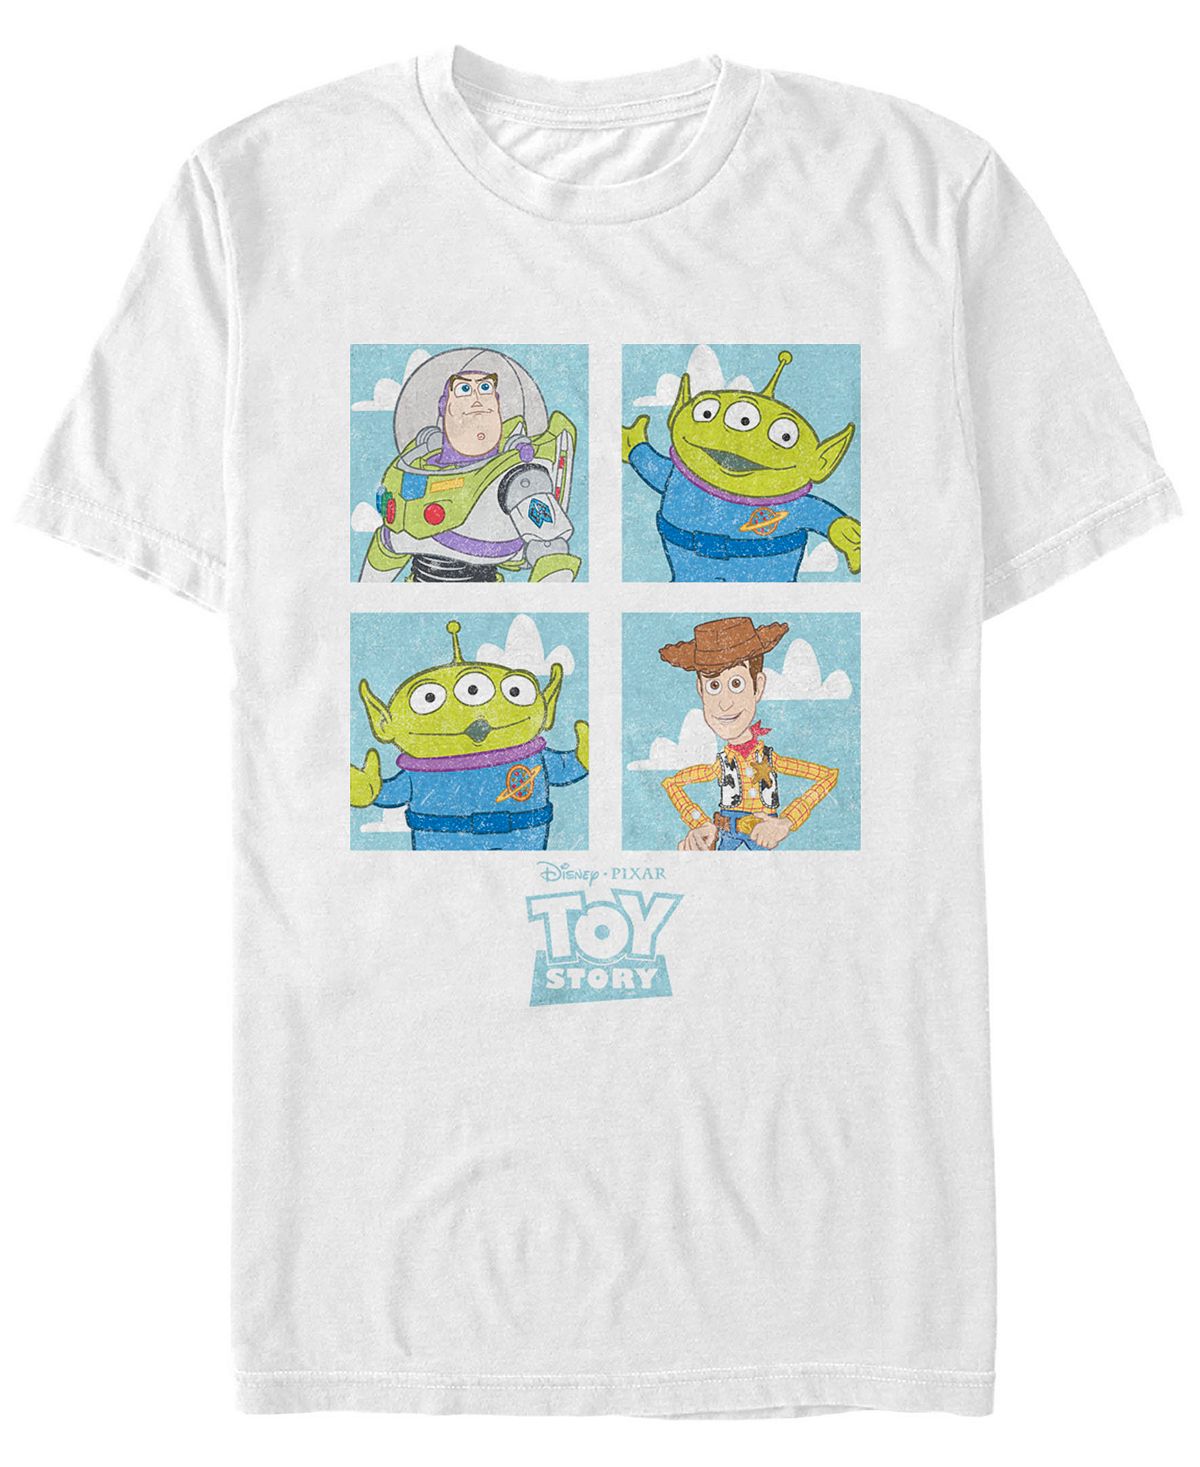 Мужская футболка с короткими рукавами disney pixar с героями мультфильмов «история игрушек» Fifth Sun, белый